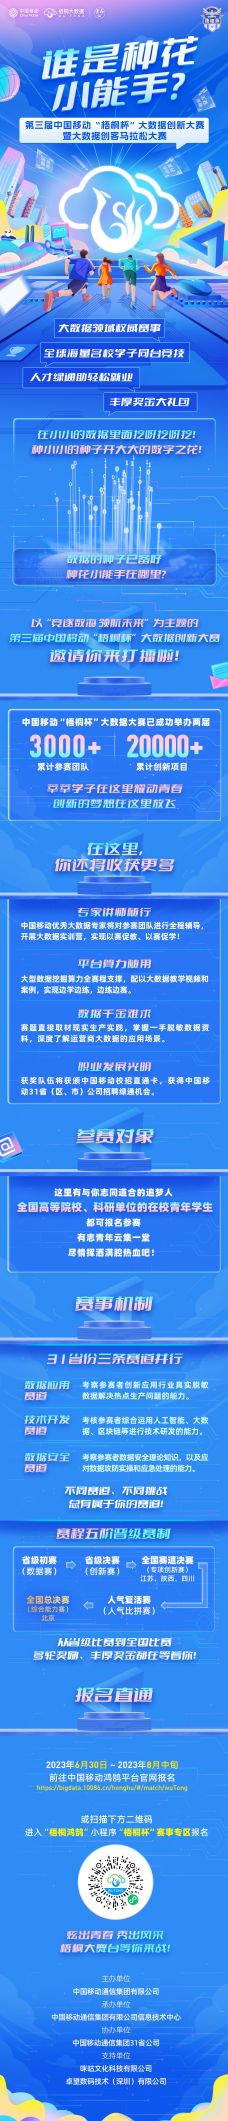 第三届中国移动“梧桐杯”大数据创新大赛邀你来打擂！